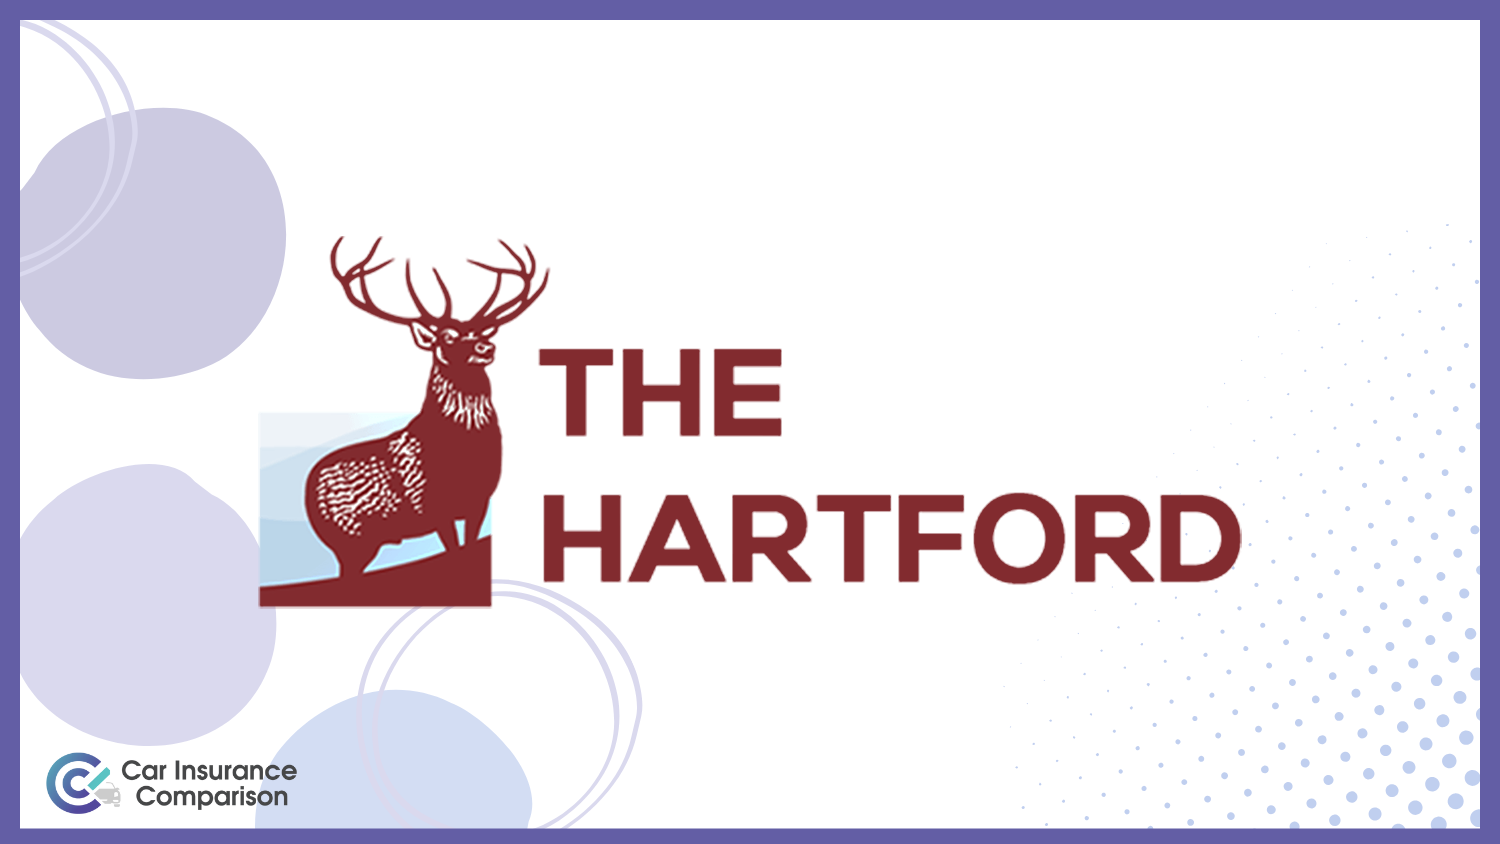 The Hartford: Best Car Insurance for Seniors over 80